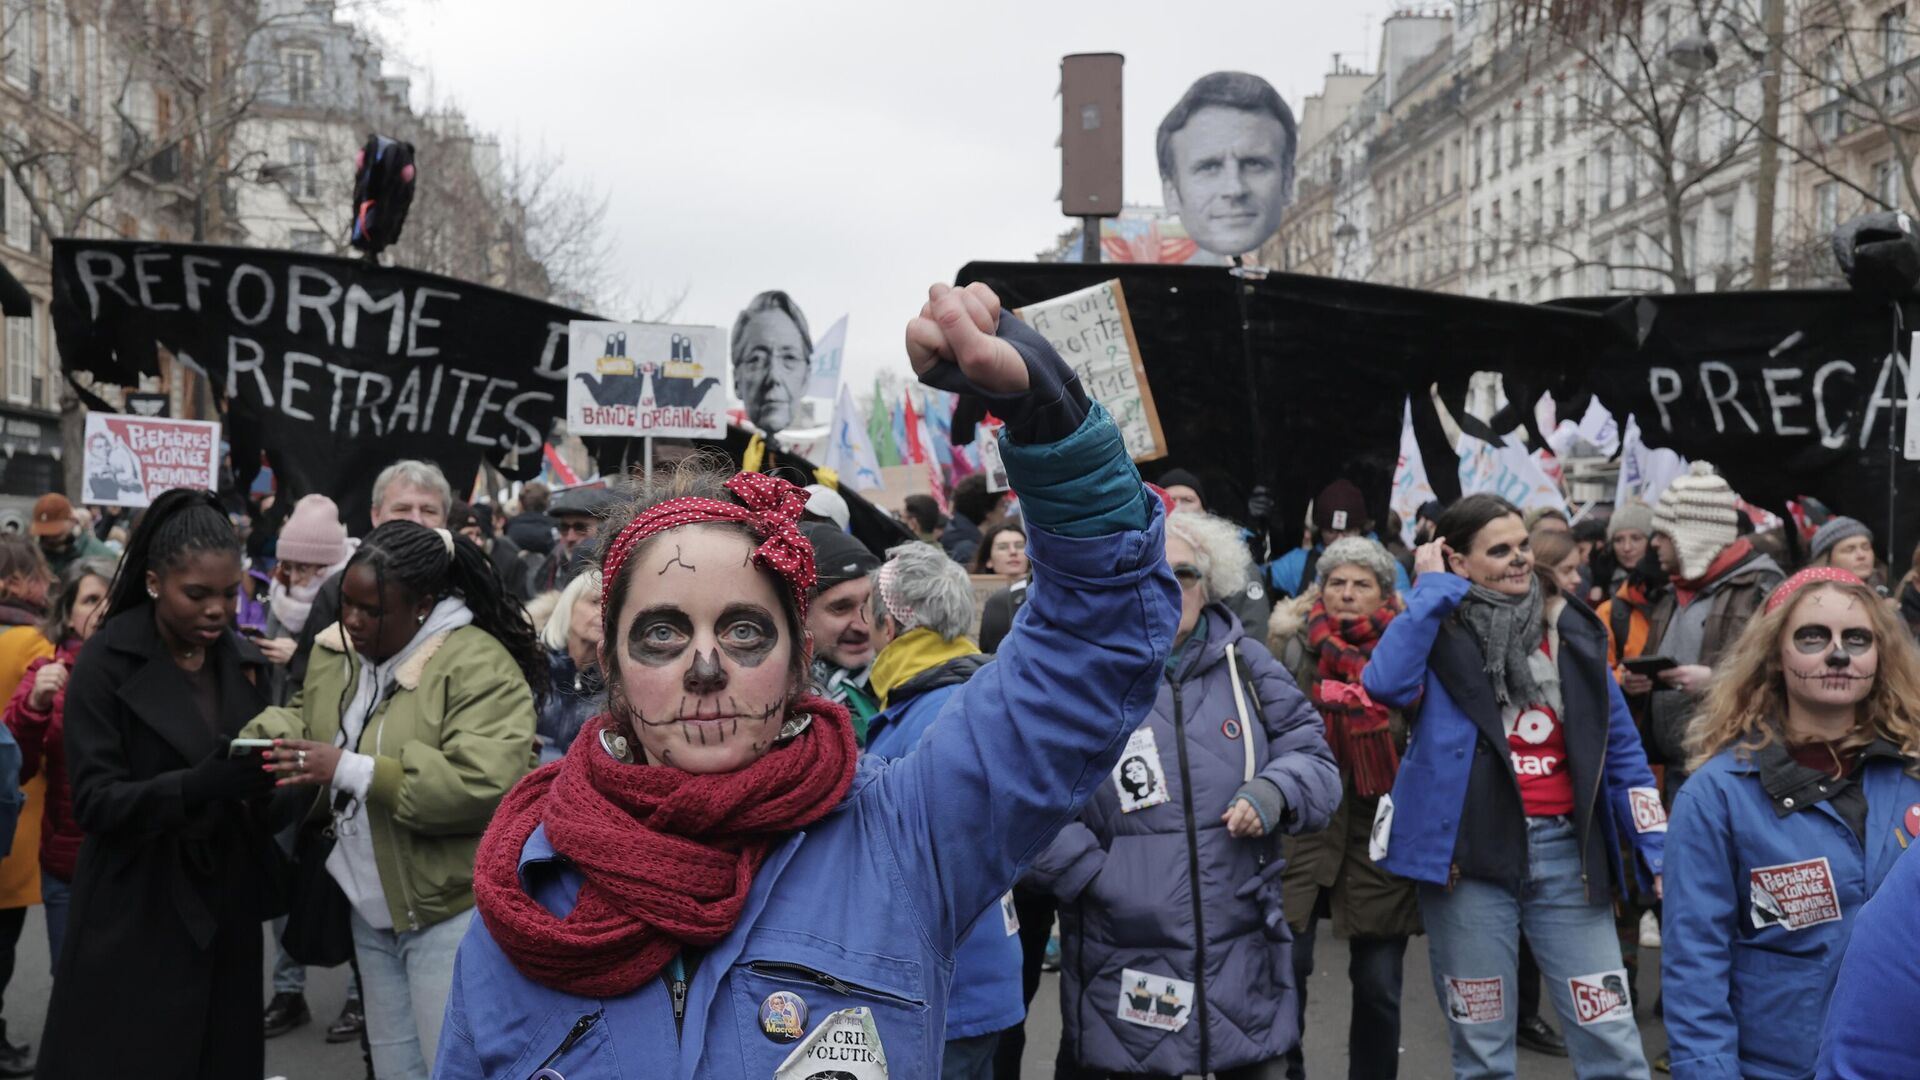 Manifestación contra los cambios en las pensiones, el 19 de enero de 2023 en París - Sputnik Mundo, 1920, 11.03.2023